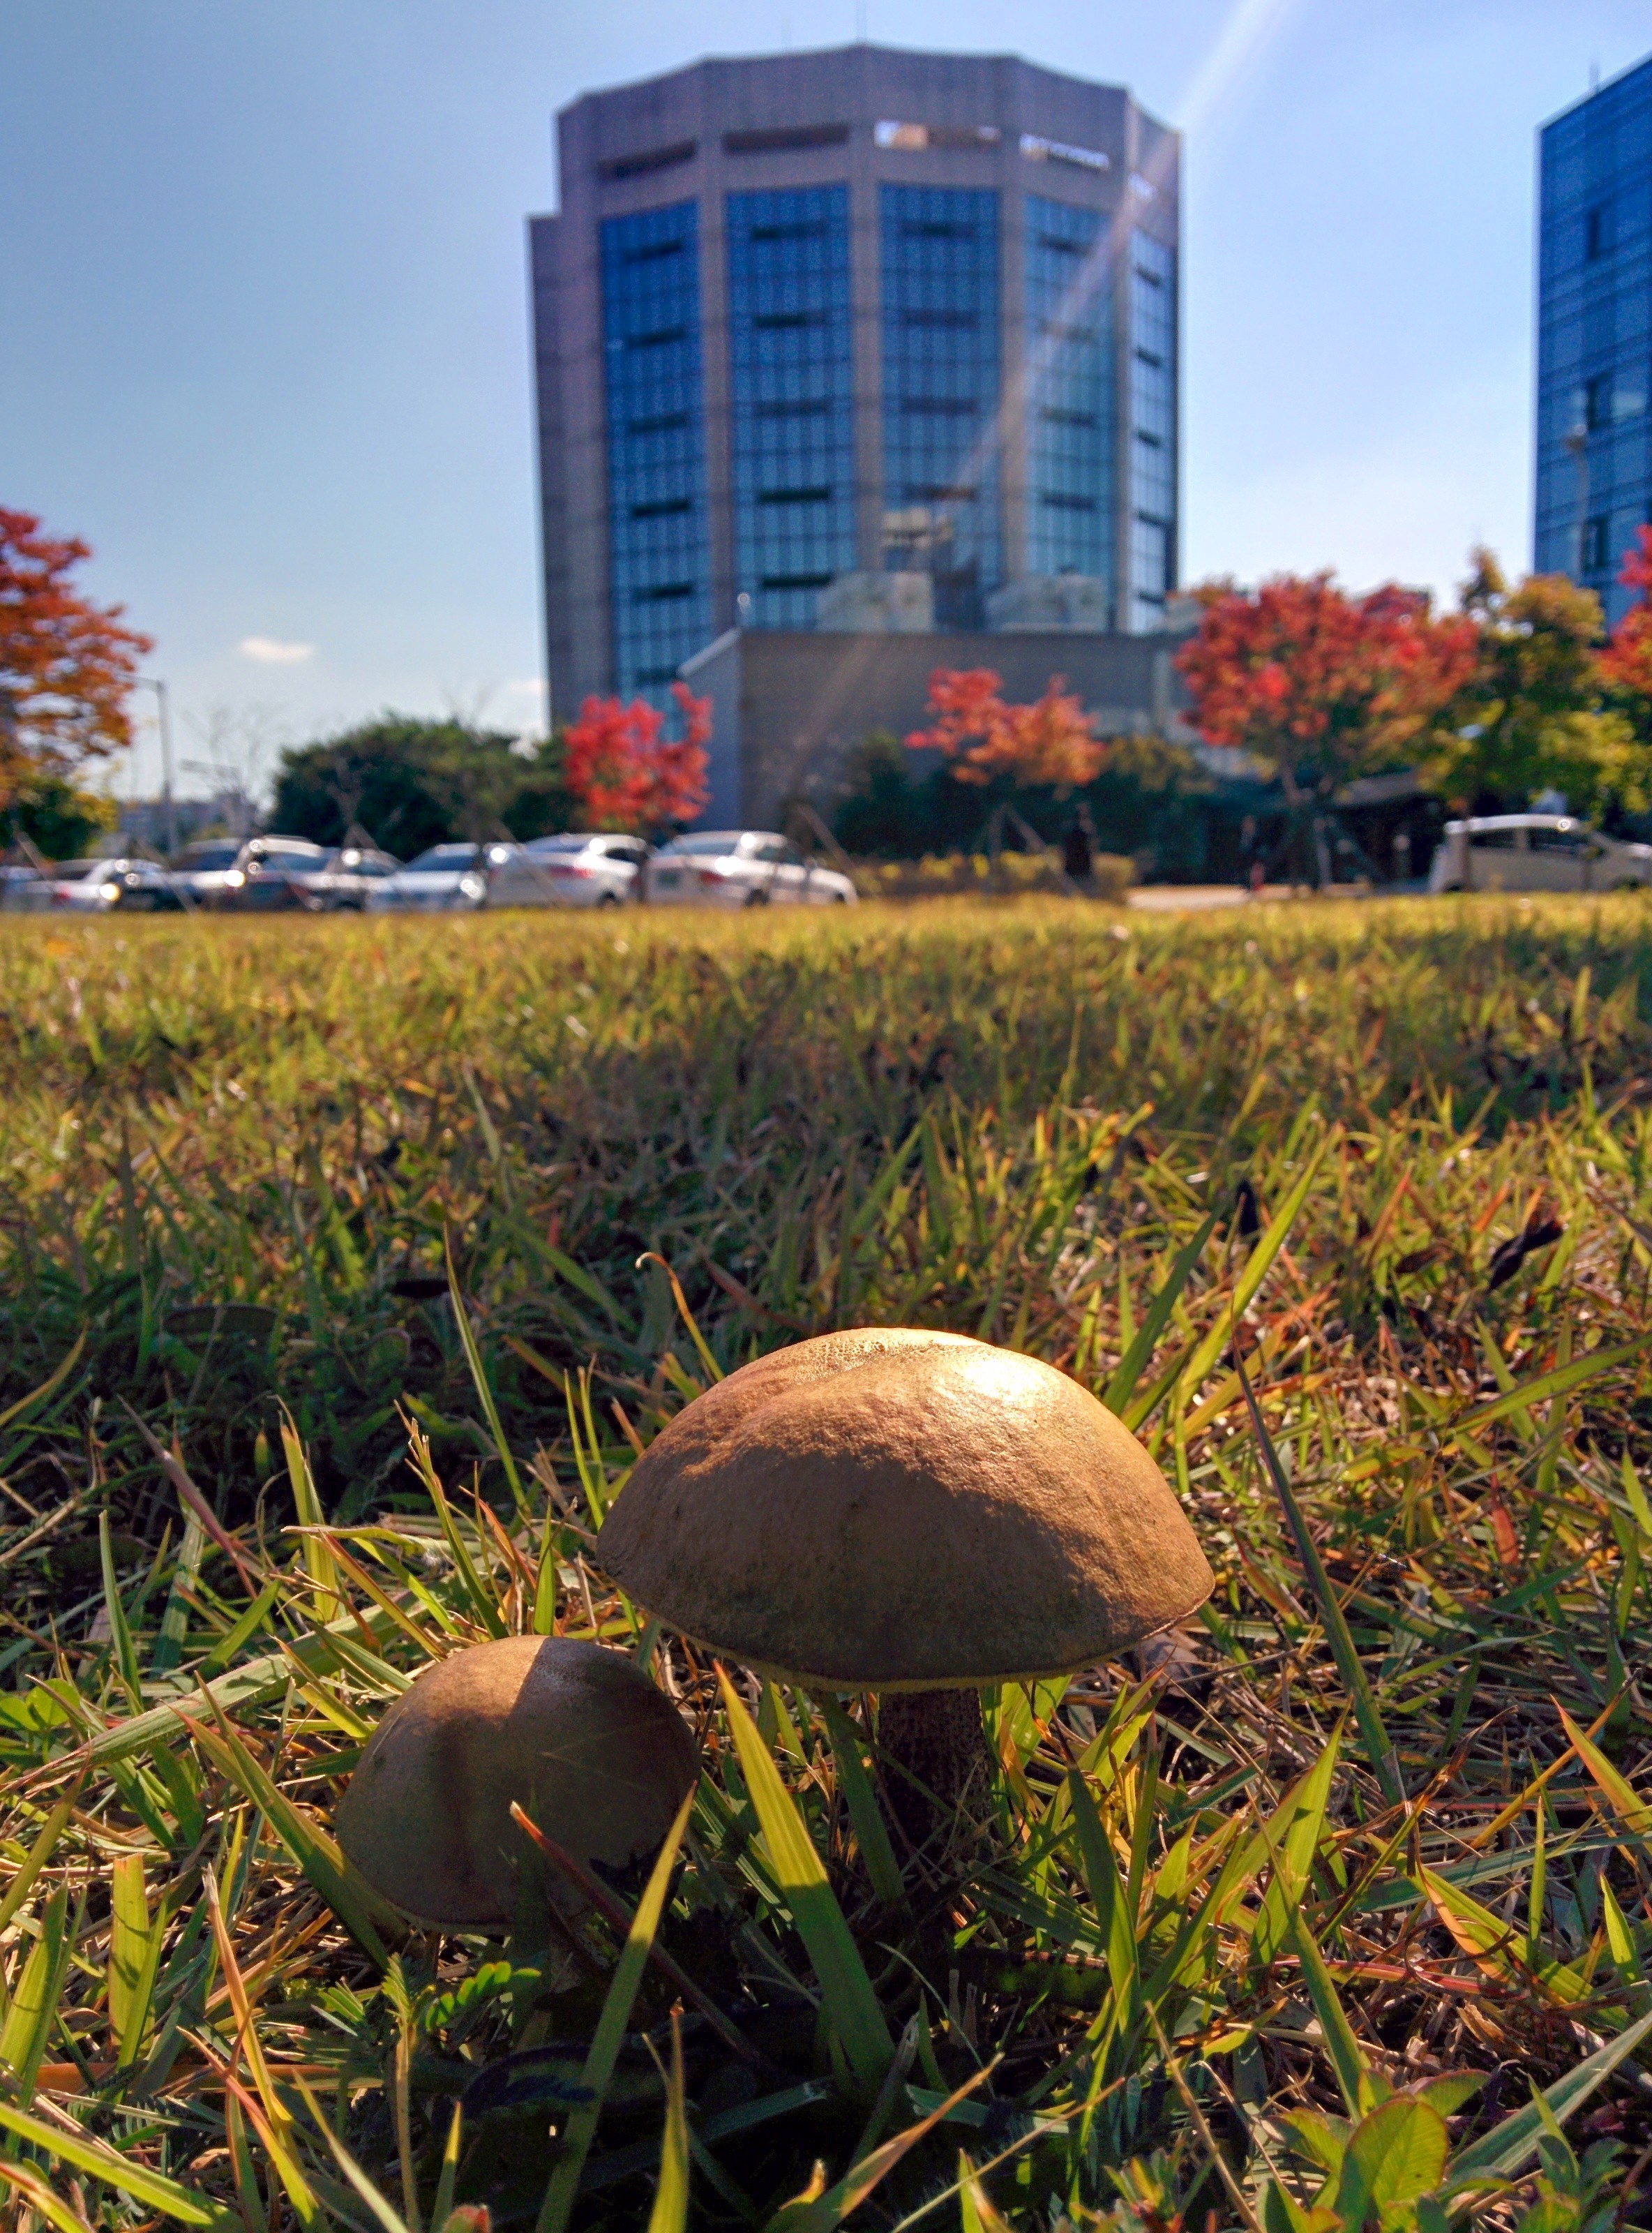 IMG_20141023_124657.jpg 갓의 가운데 골이 있어서 묘한 잔디밭 버섯